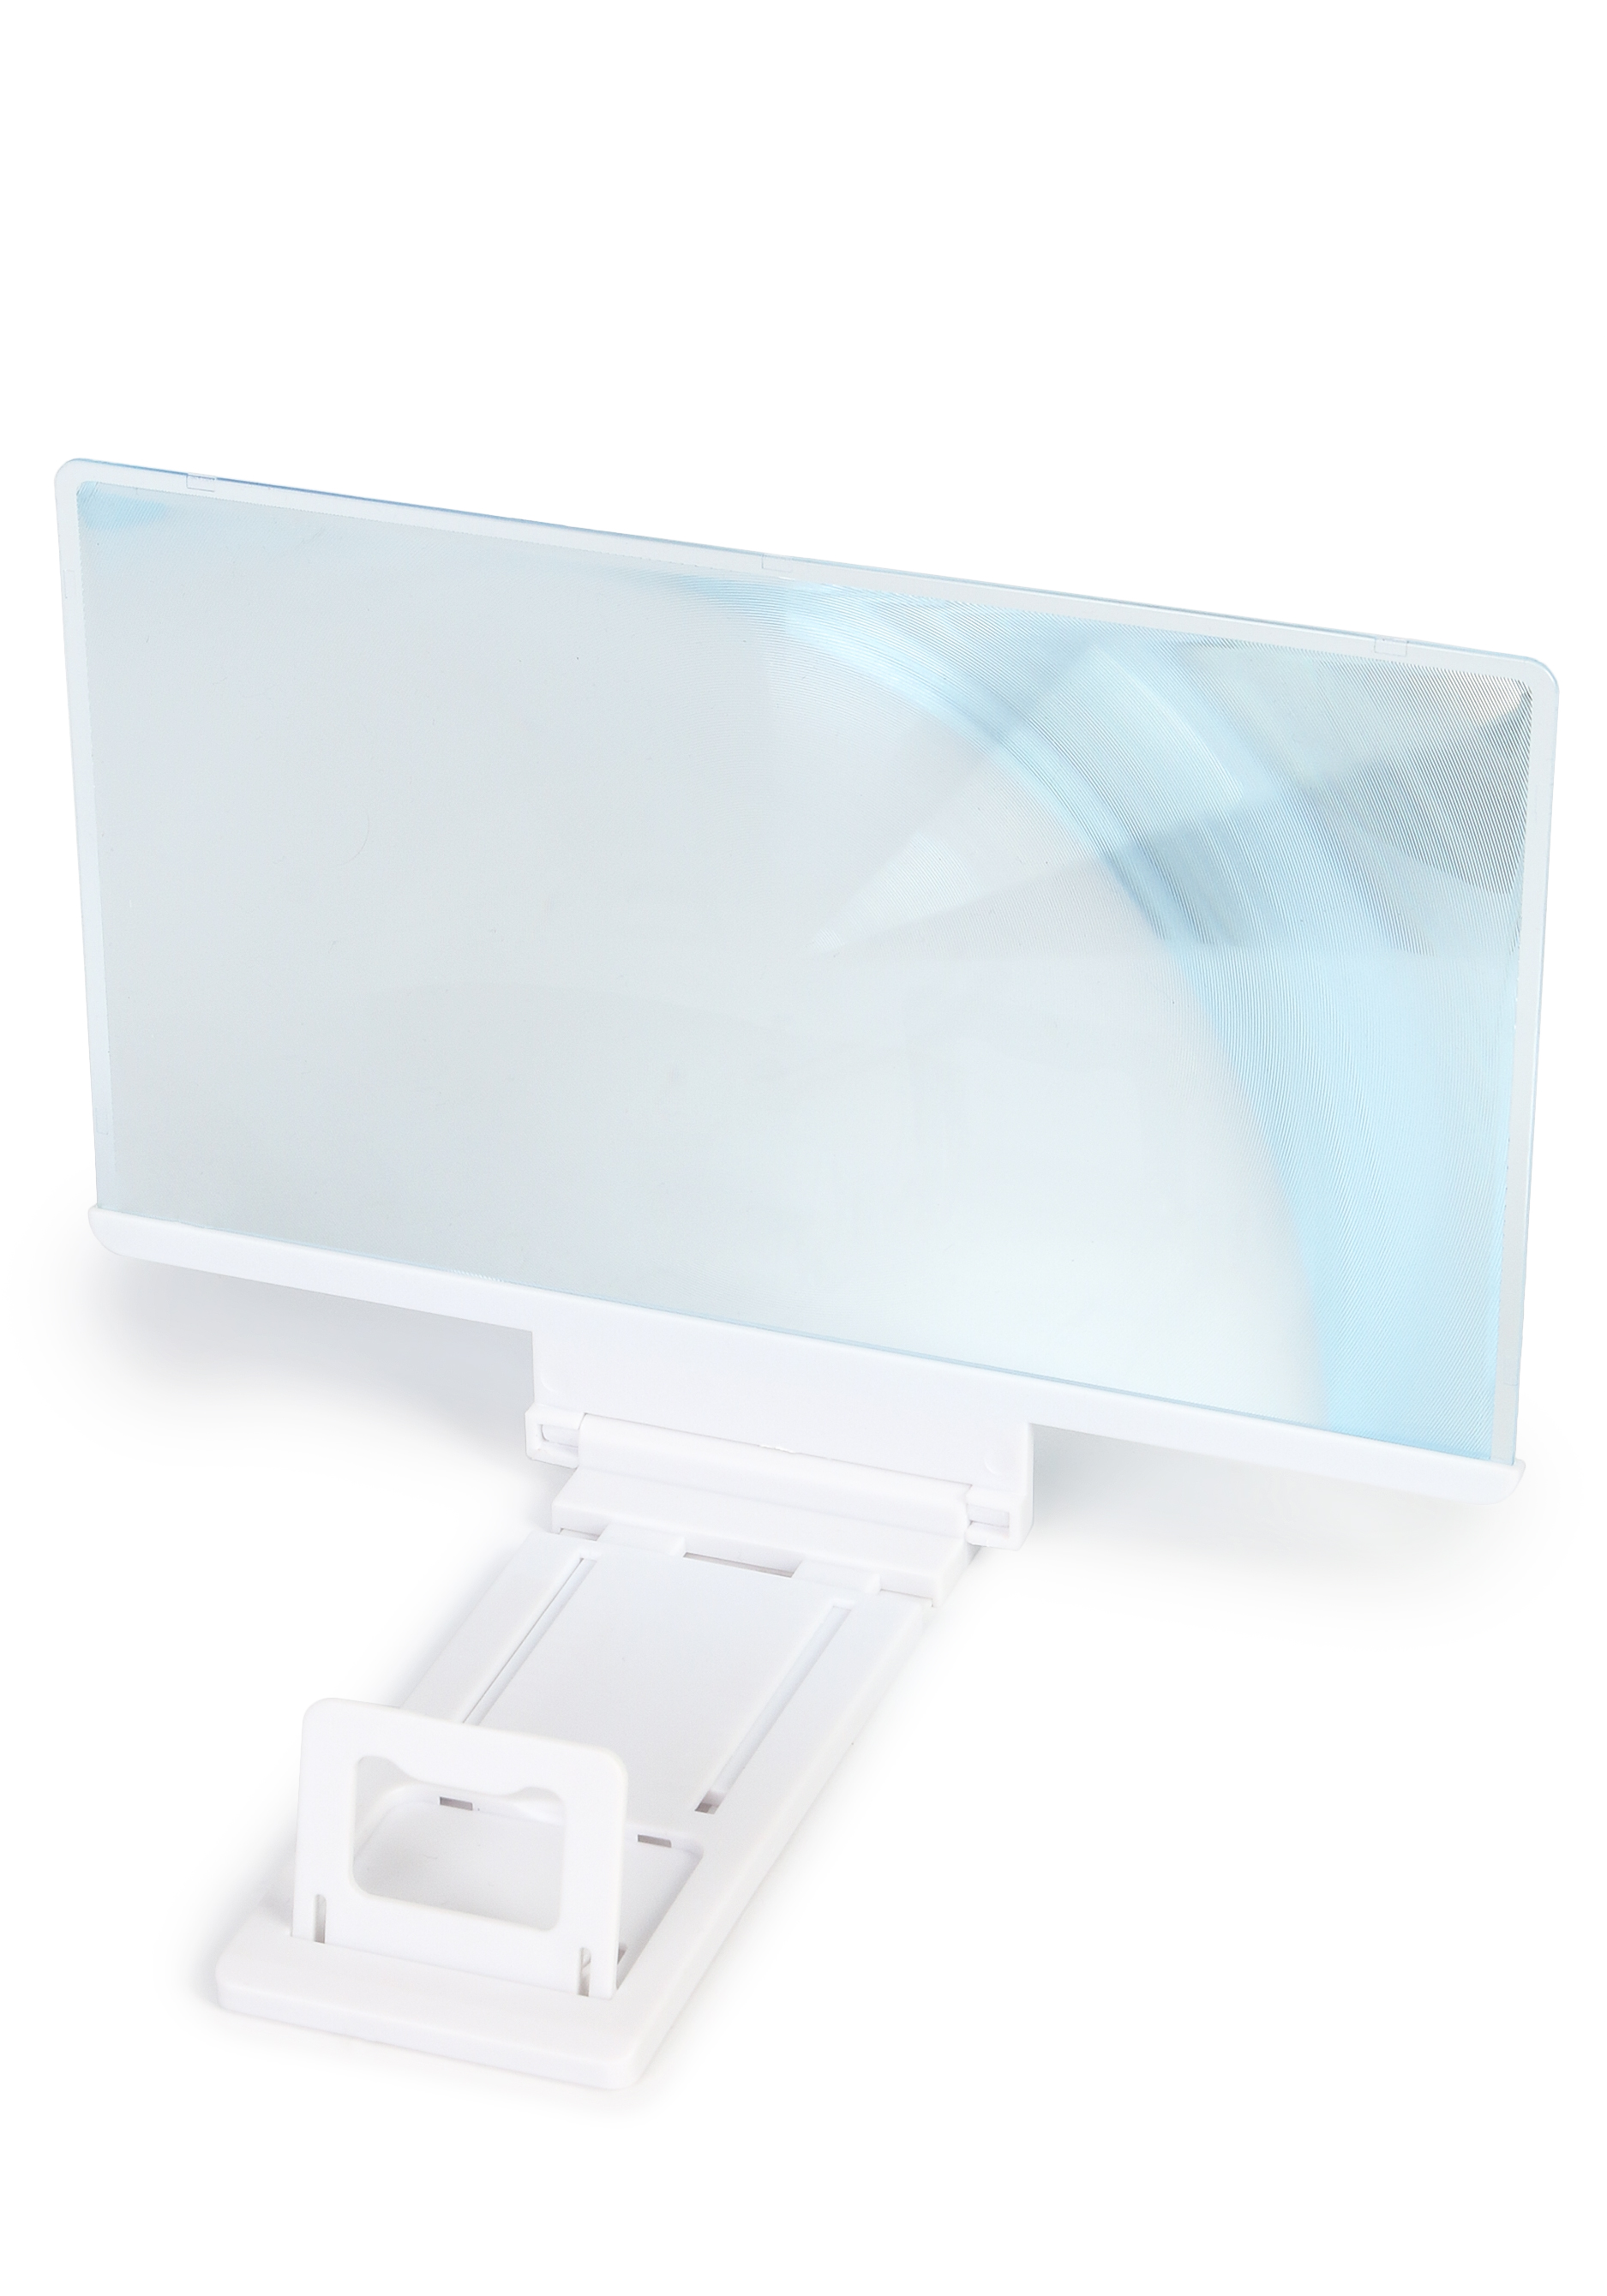 Увеличительное стекло "Эффект телевизора" Luazon Home, цвет белый